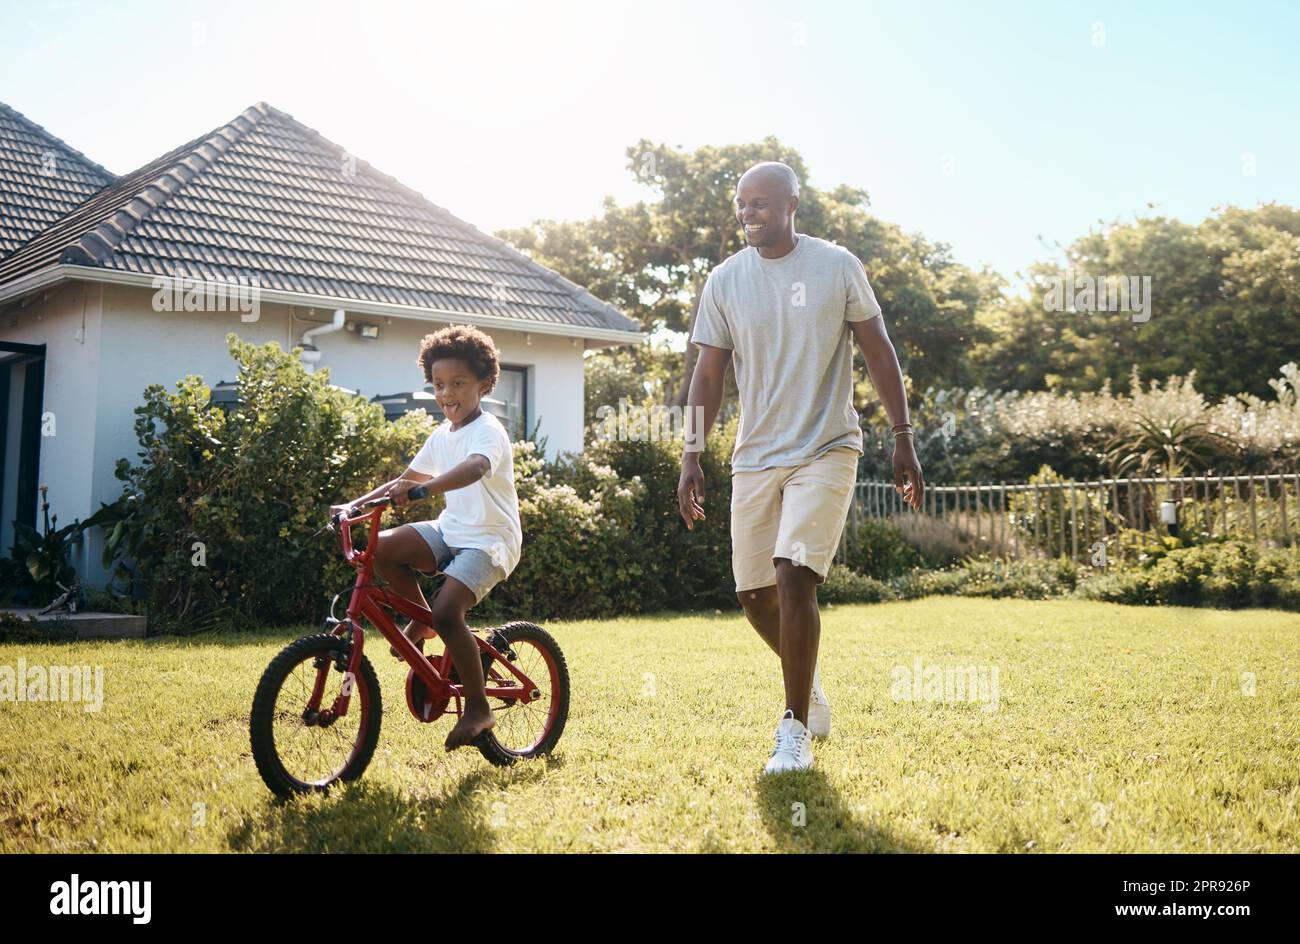 Liebenswert kleinen afroamerikanischen Jungen lernen, sein Fahrrad außerhalb mit Vater zu fahren. Vater und Sohn haben Spaß in ihrem Hinterhof an einem sonnigen Tag Stockfoto